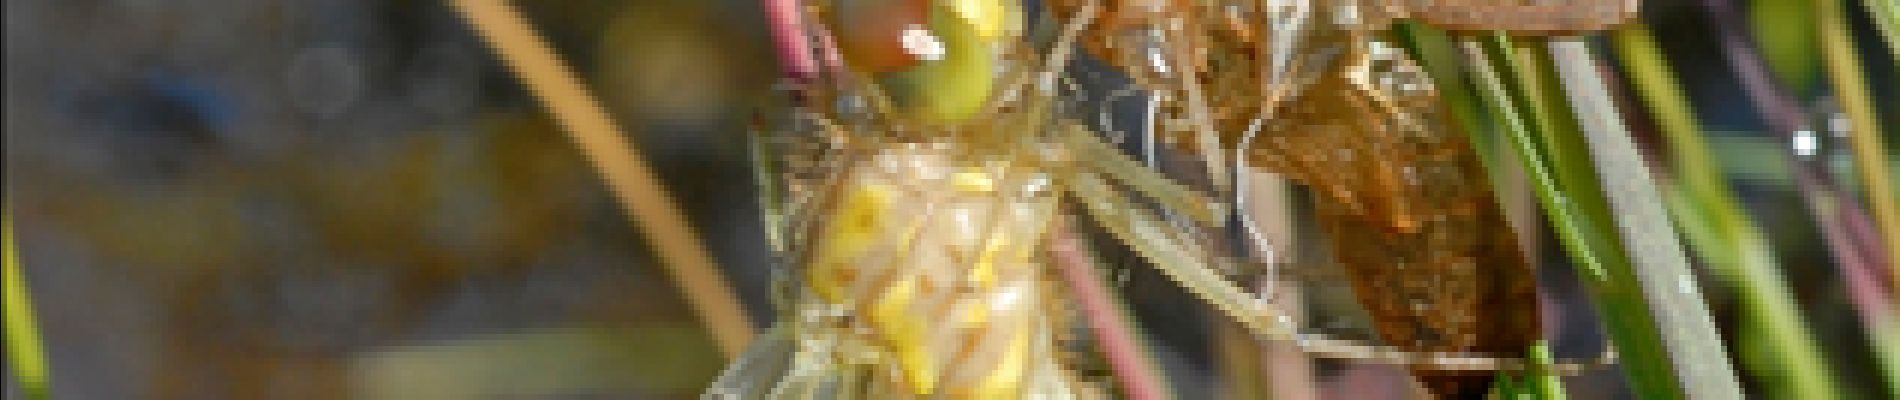 Point d'intérêt Florenville - 1 - Les libellules - Photo